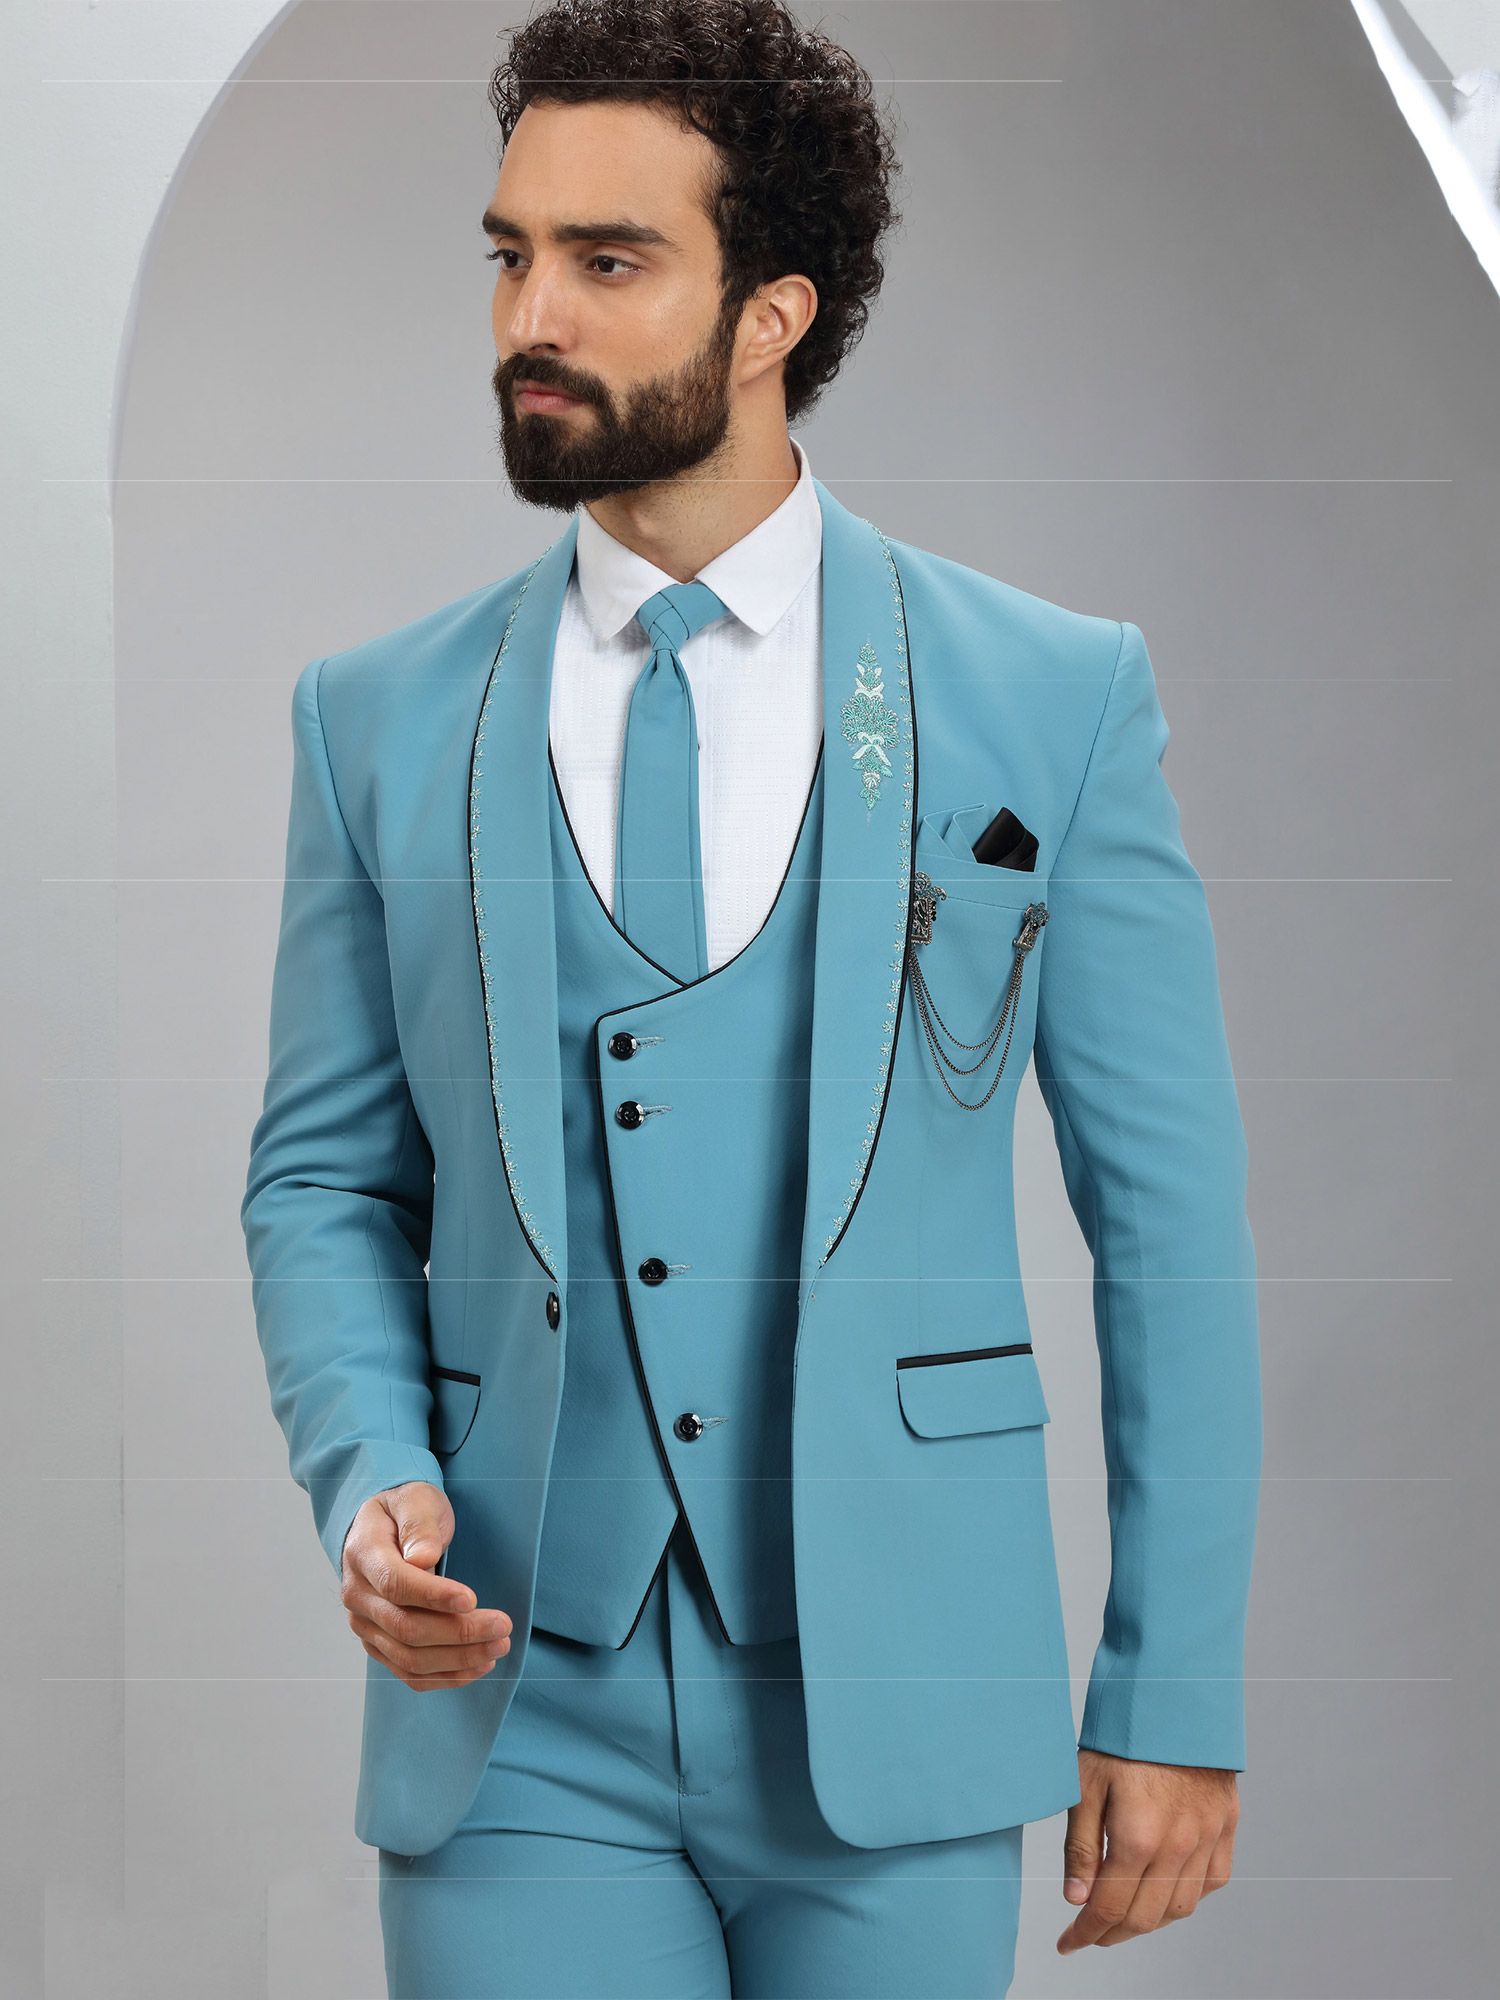 Next Look 3 Piece Suit Checkered Men Suit - Buy Next Look 3 Piece Suit  Checkered Men Suit Online at Best Prices in India | Flipkart.com